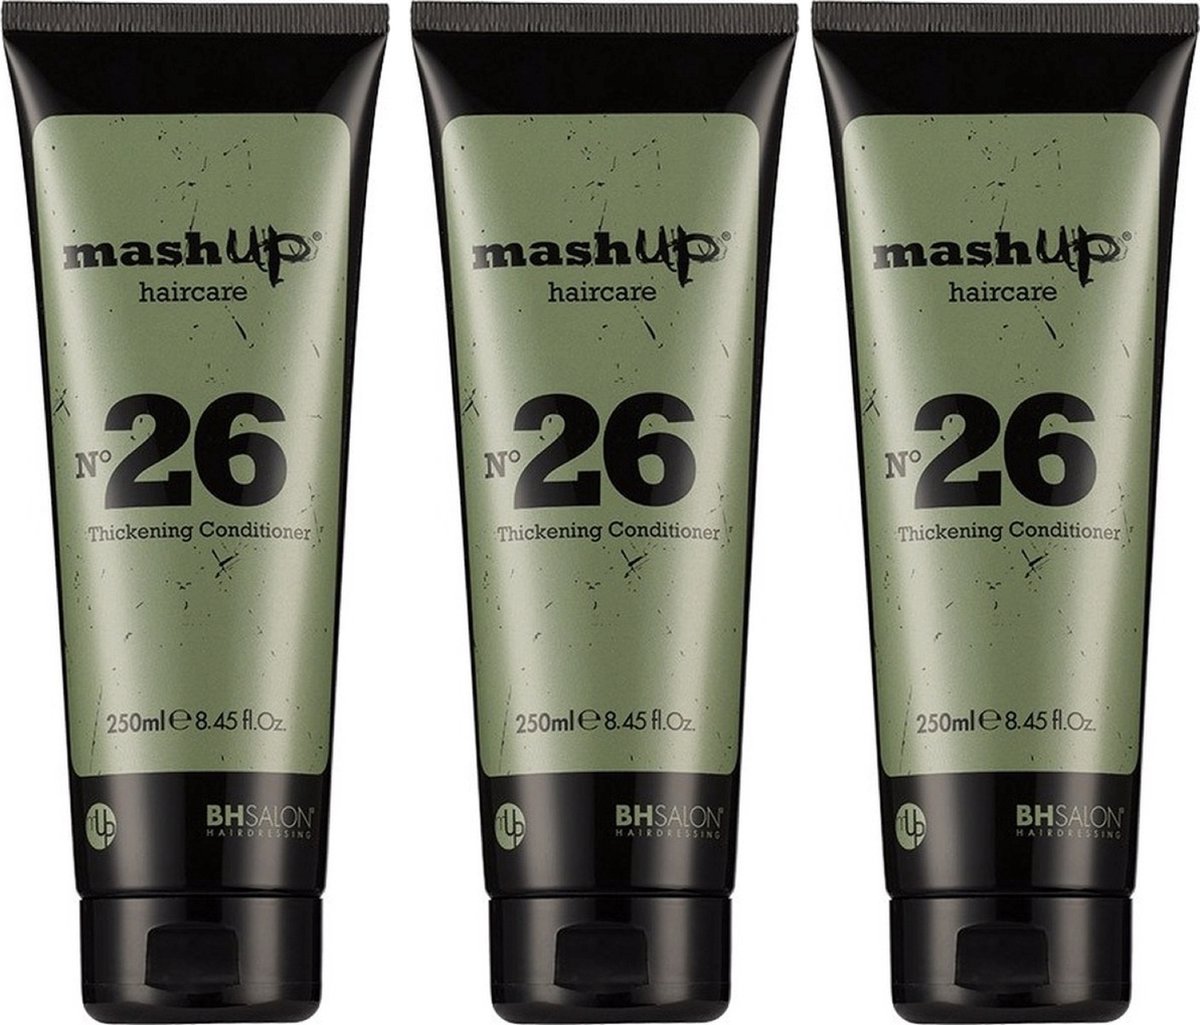 mashUp haircare N° 26 Thickening Conditioner 250ml - 3 stuks